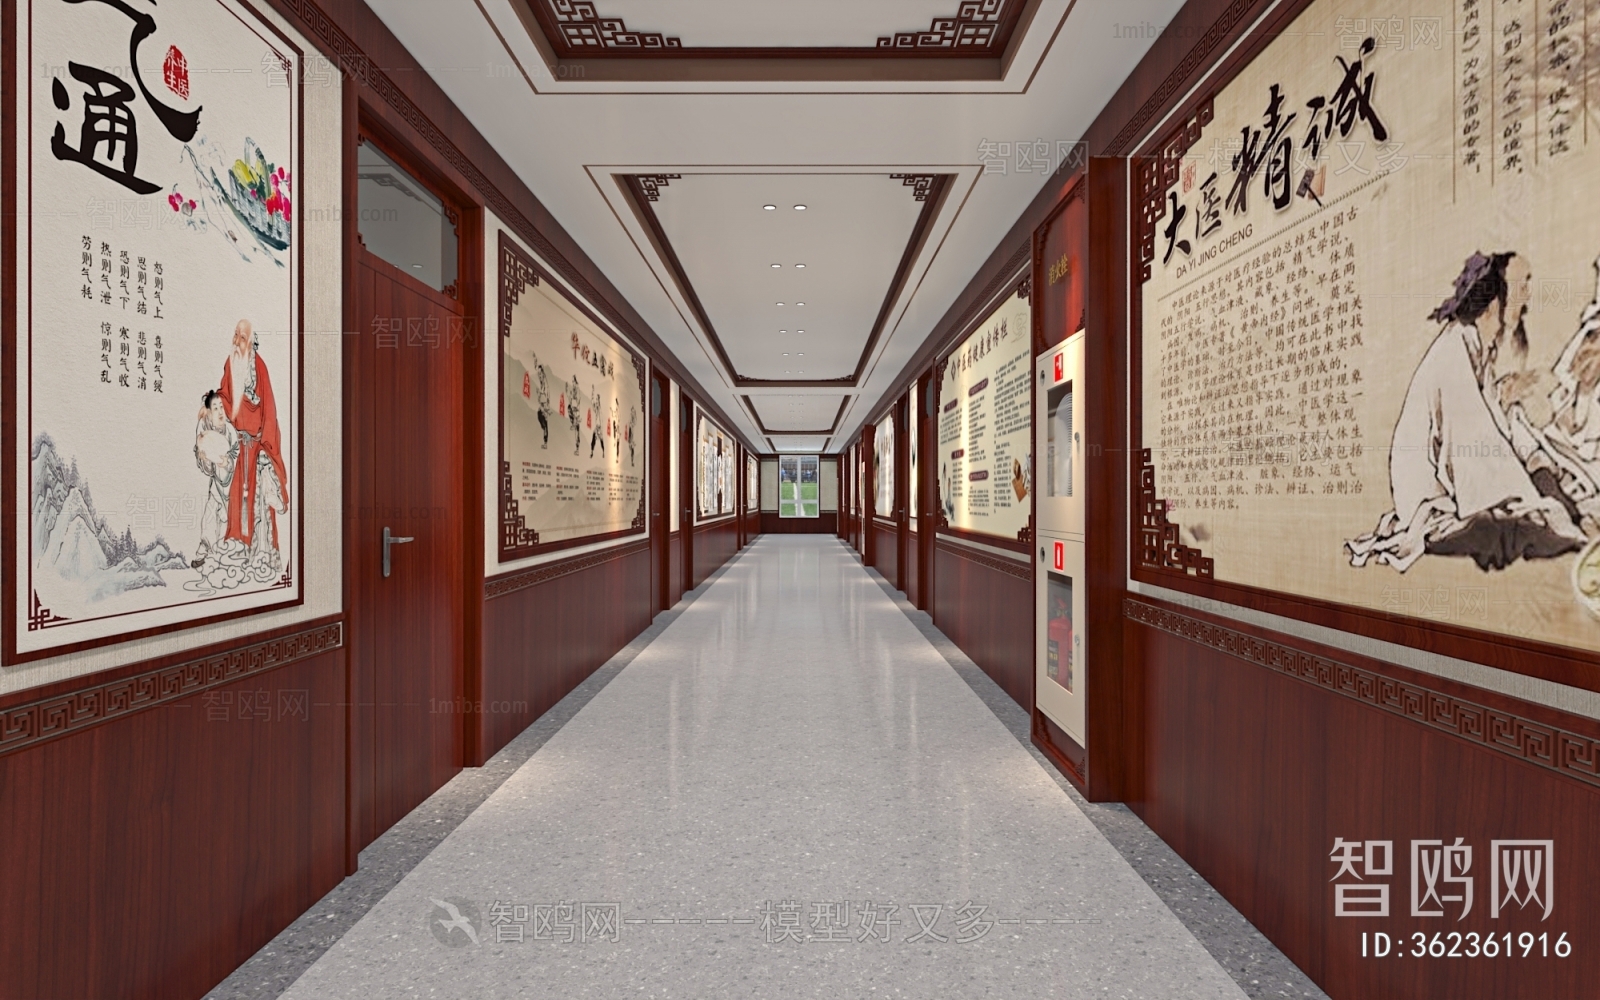 Chinese Style Hospital